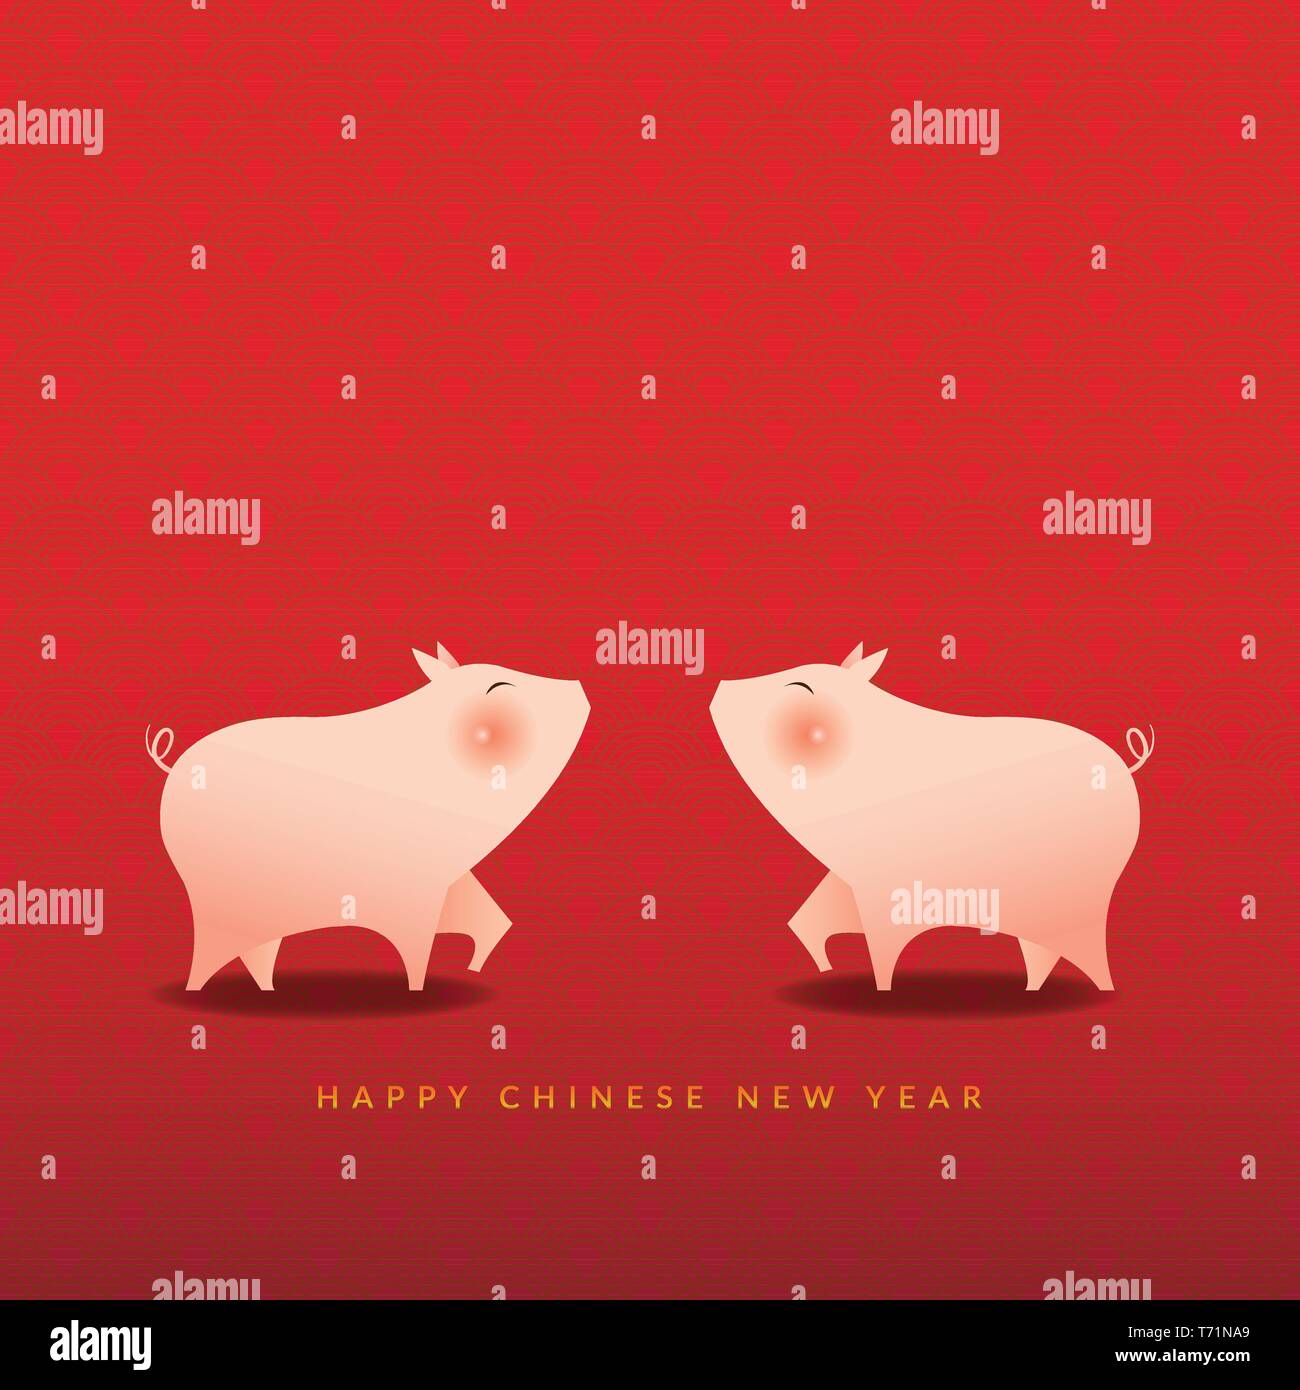 Frohes Neues Jahr 2019. Das chinesische Neujahr Konzept, das Jahr des Schweins. Grußkarte mit niedlichen zwei Schweine und Text Happy Chinese New Year Stock Vektor